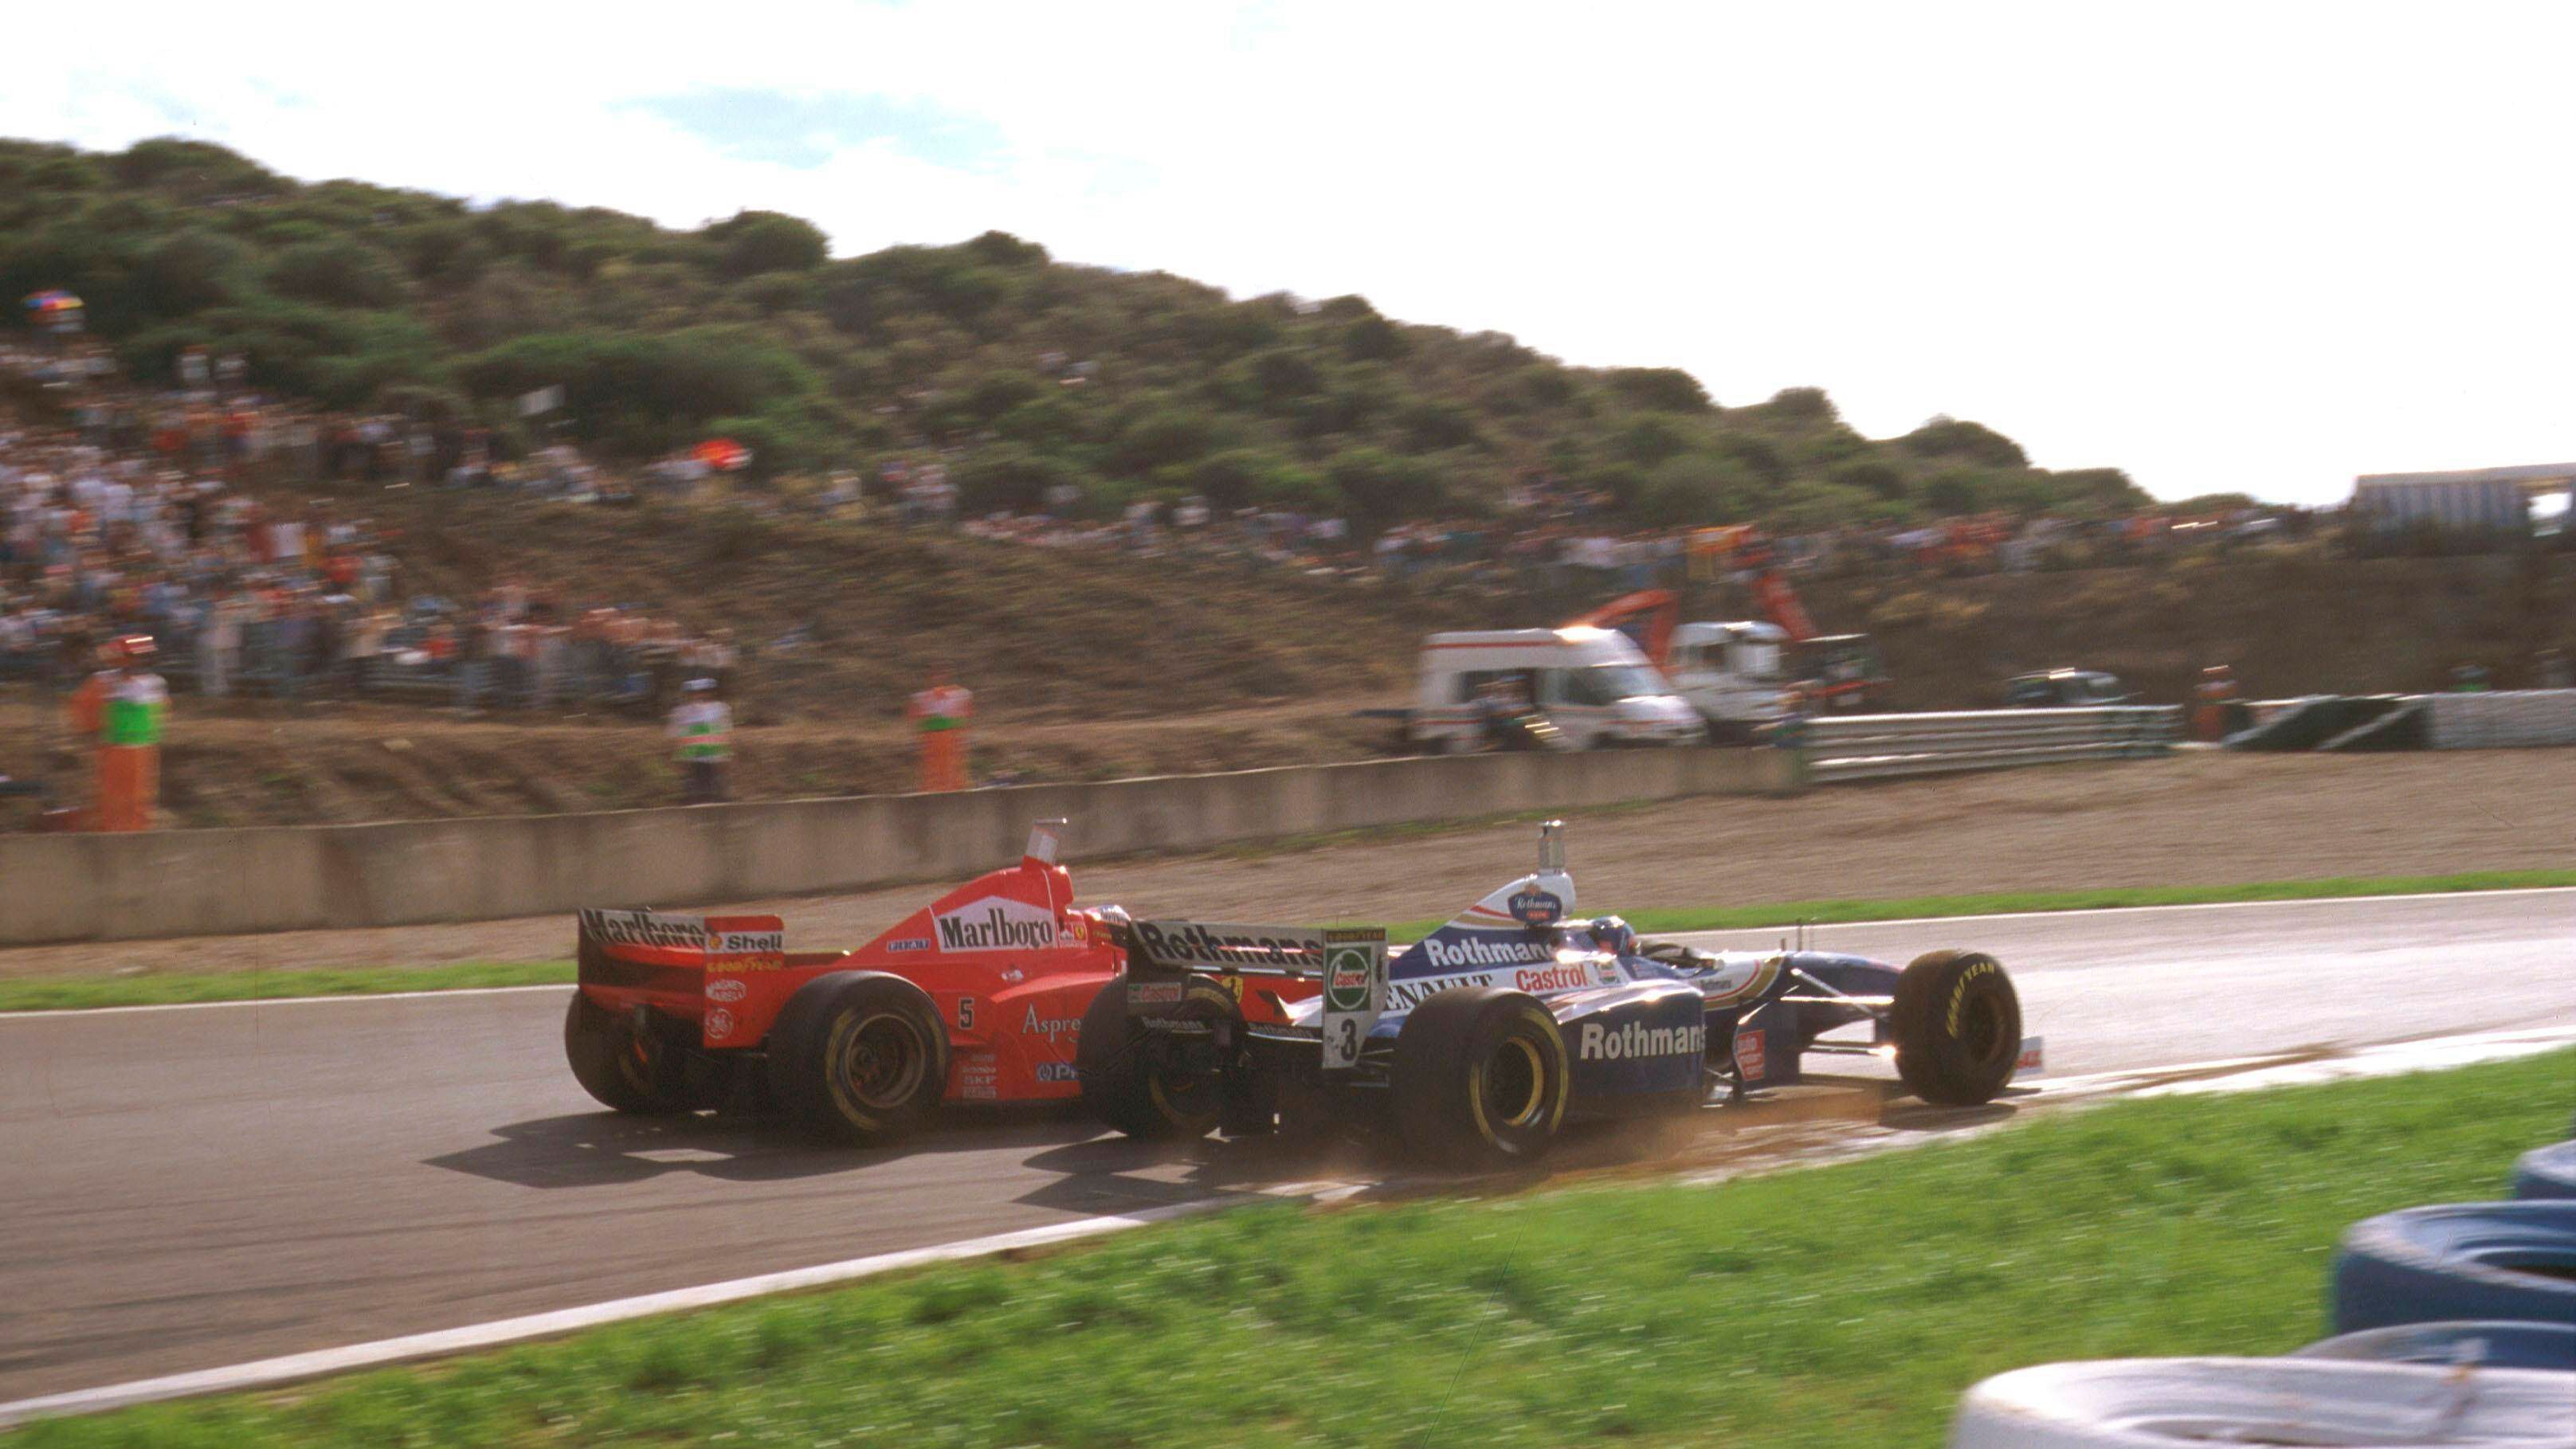 <strong>Kollision mit Villeneuve - Disqualifikation von der WM-Wertung 1997<br></strong>1997 war Schumacher nah an seinem dritten WM-Titel und ging als Führender in das letzte Rennen in Jerez. Dort überholte sein Widersacher Jacques Villeneuve den Ferrari in der Schlussphase, Schumacher zog in den Williams rein und bugsierte sich damit selbst ins Aus. Schumacher wurde wegen der absichtlichen Kollision aus der WM-Wertung für 1997 gestrichen.